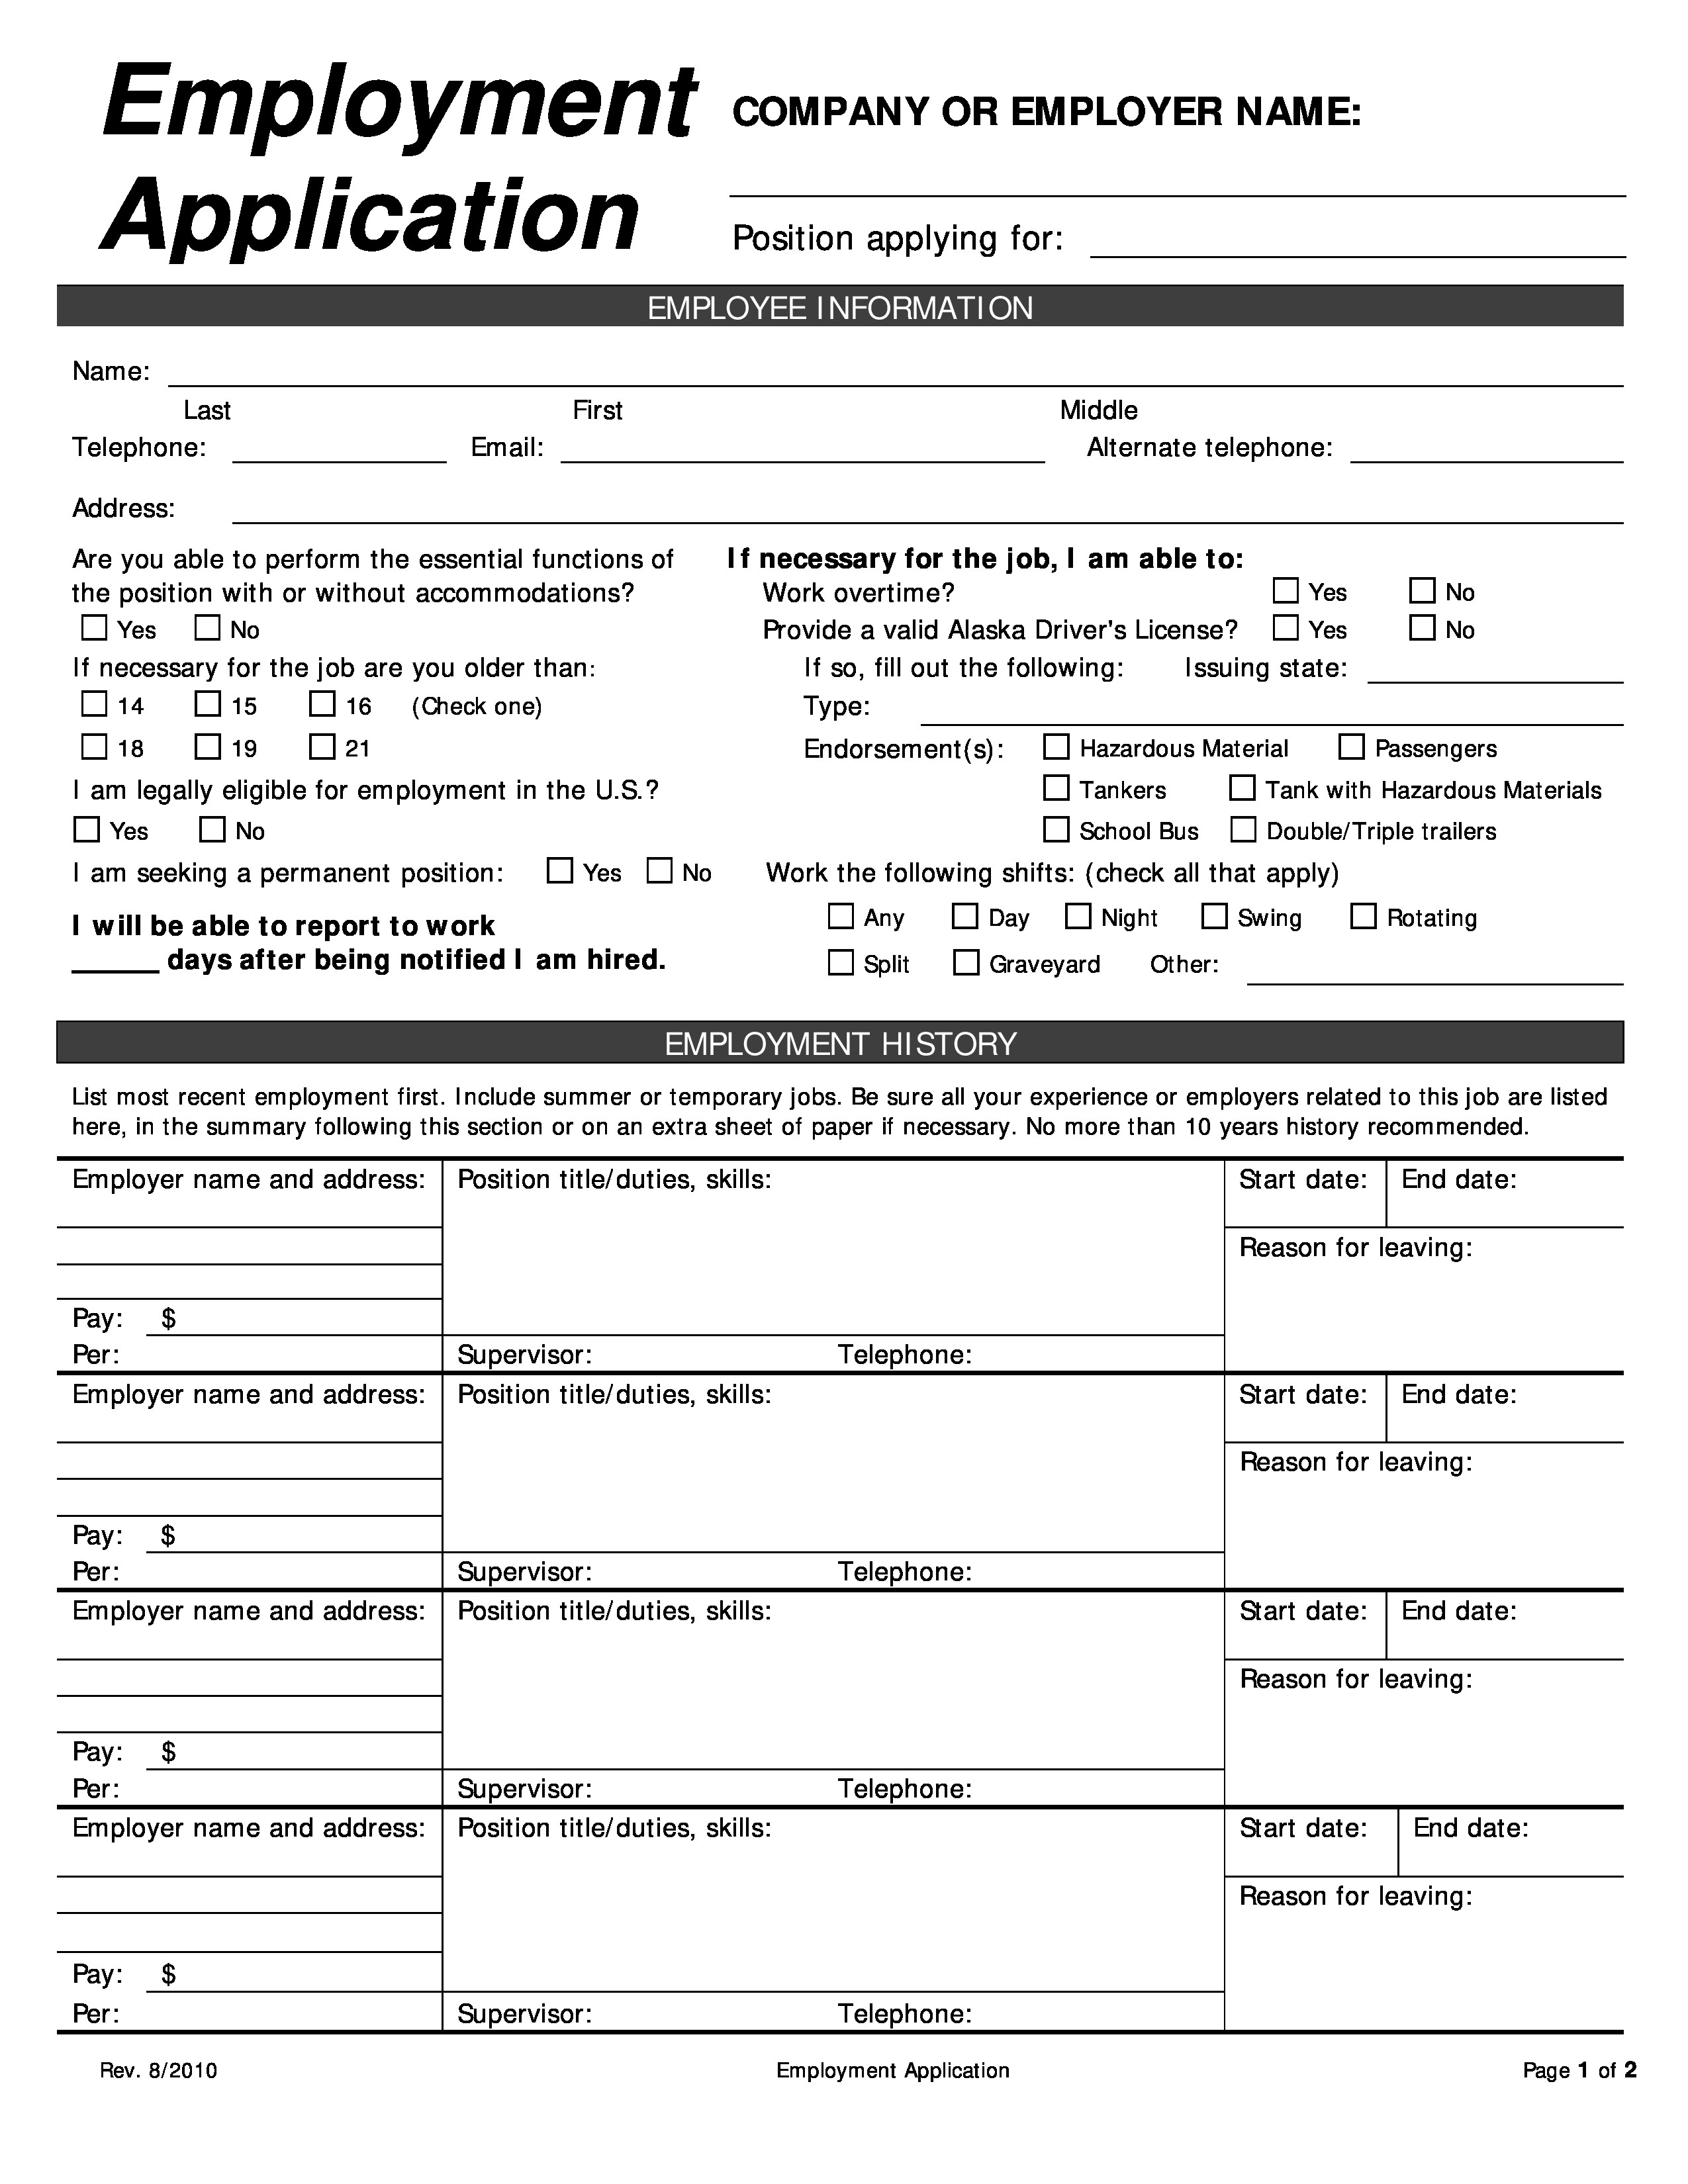 Applying Form Sivan Crewpulse Co Document